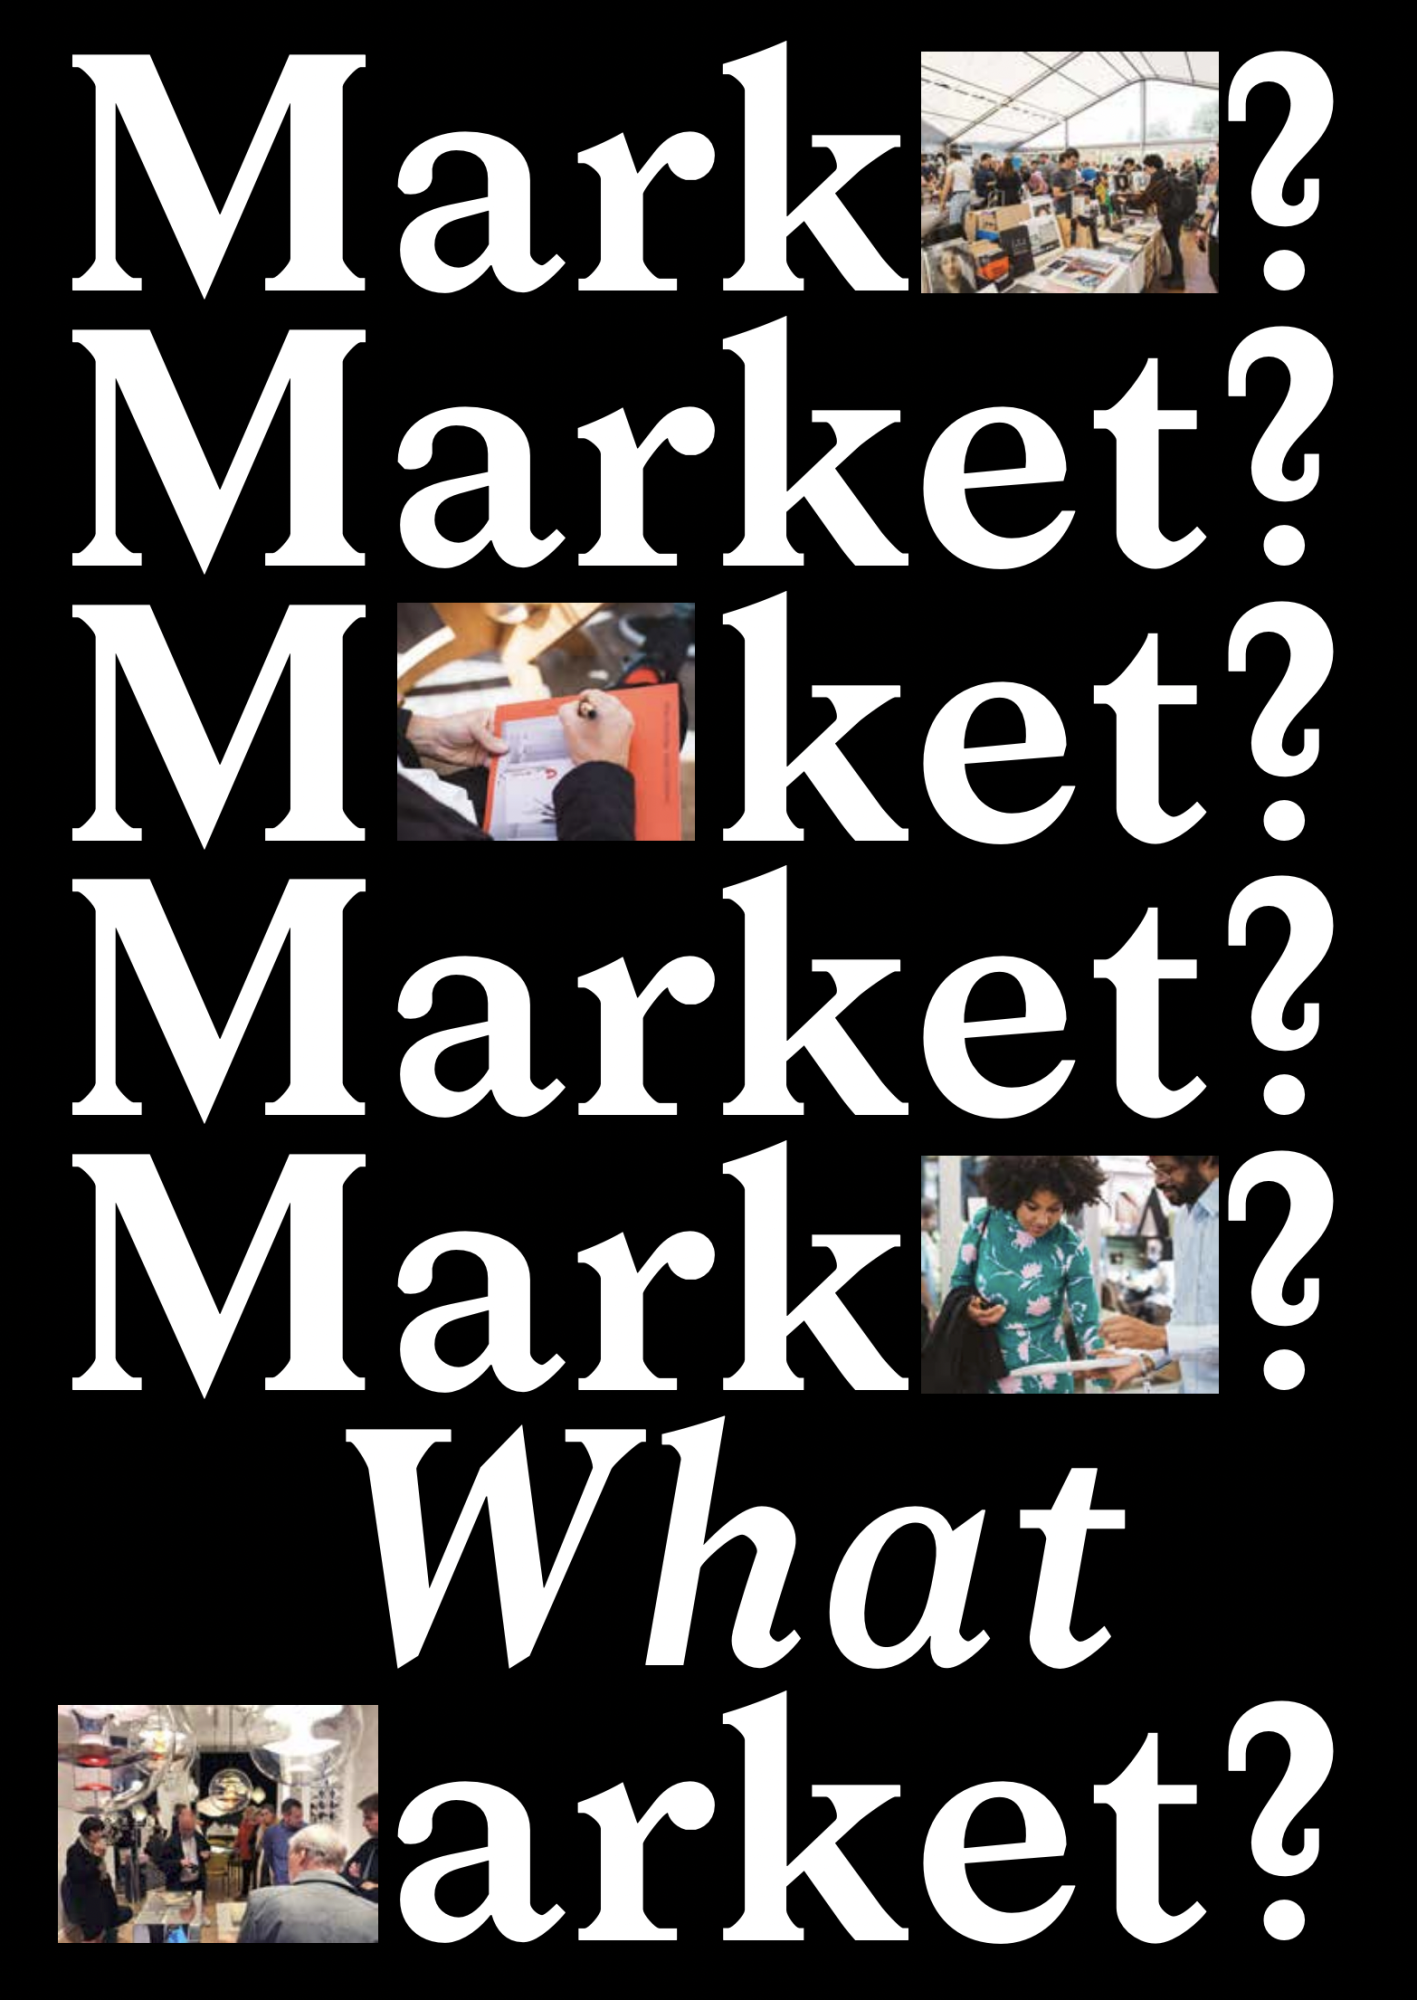 Market? What Market?